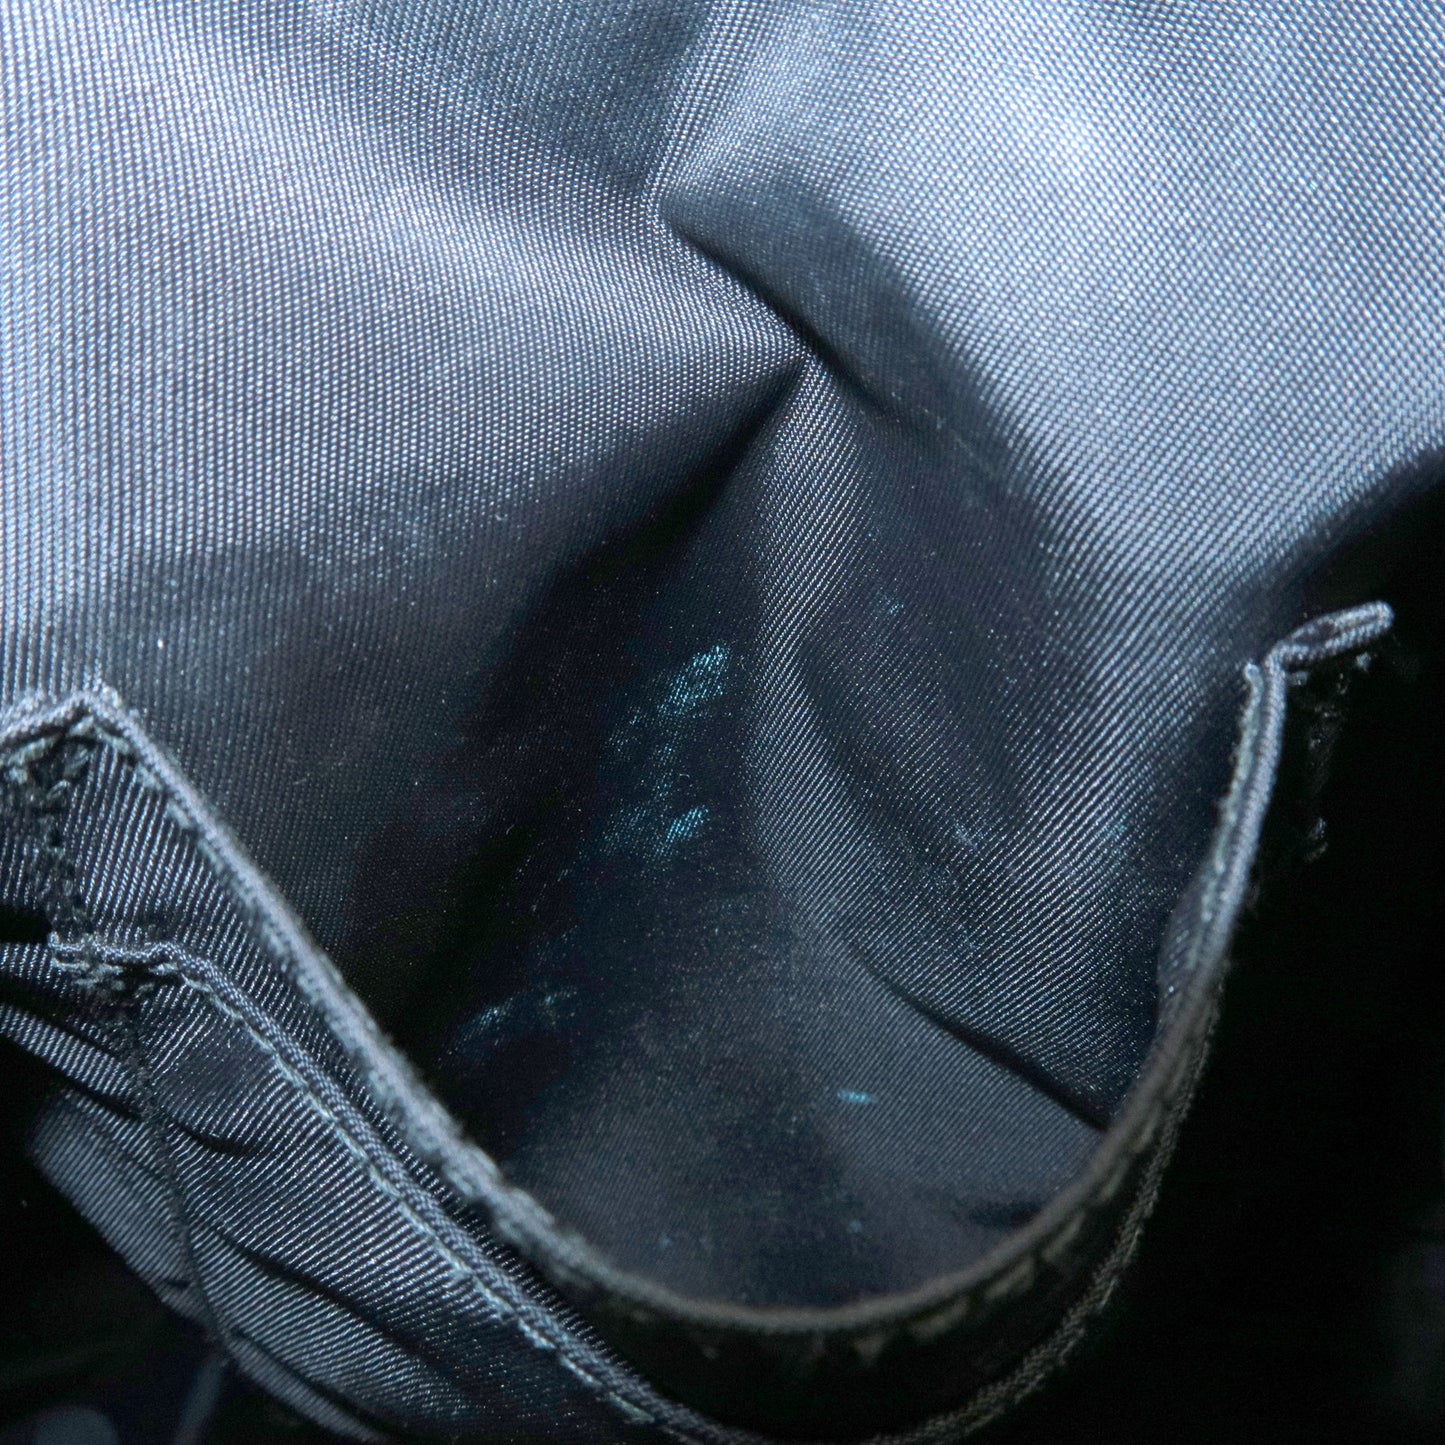 GUCCI Sherry GG Supreme Leather Shoulder Bag Beige Black 387111